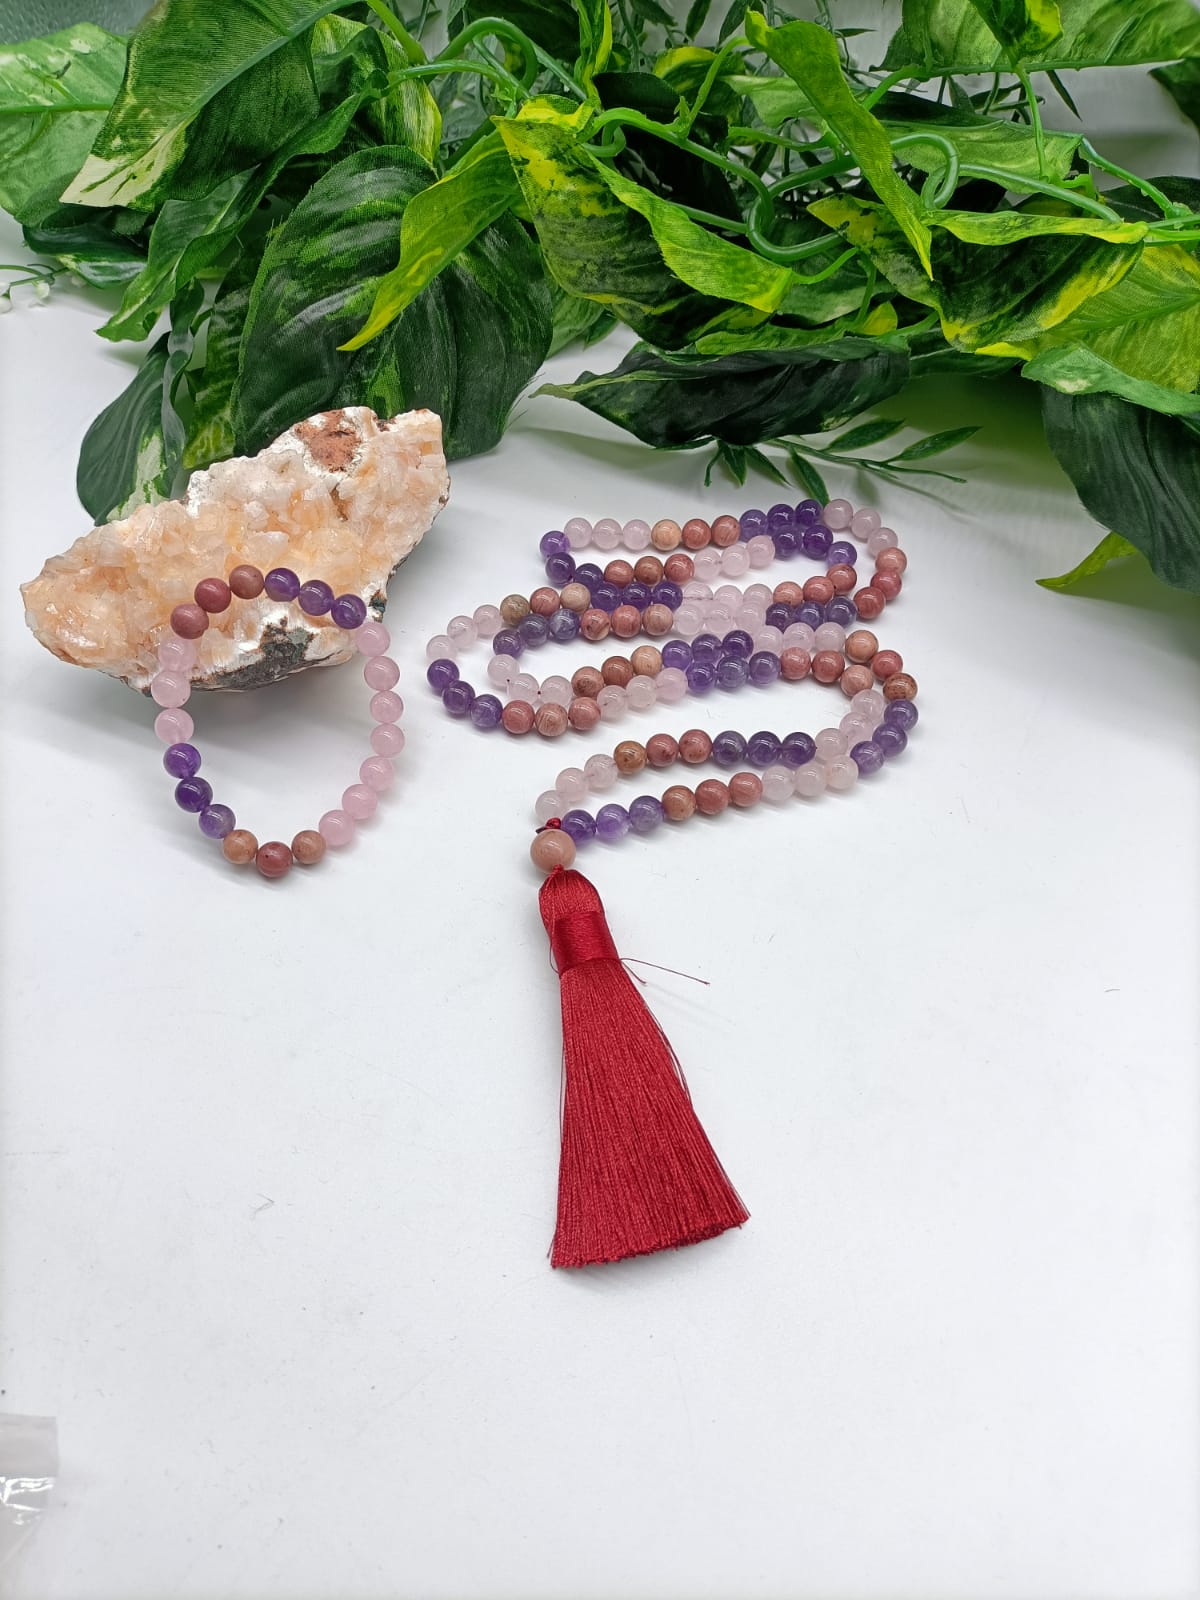 Mala Beads for Protection and Grounding Crystal Wellness